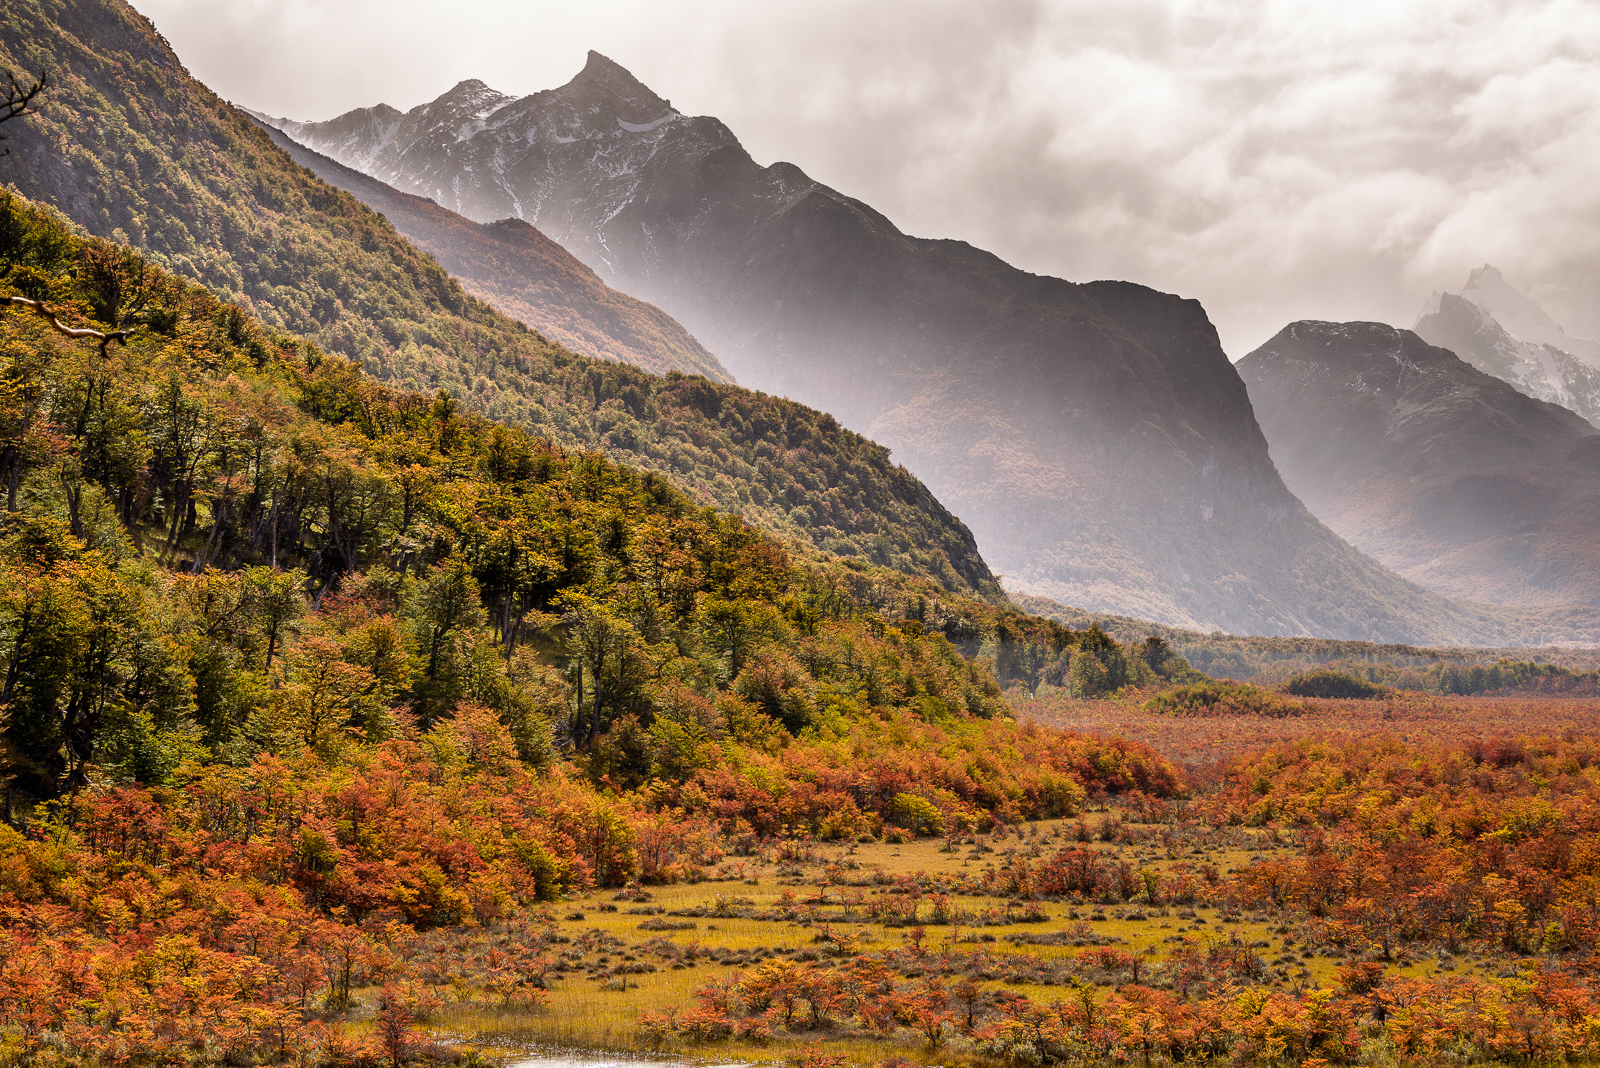 Herbstlich gefärbte Landschaft bei El Chaltén. © Frank Jahnke